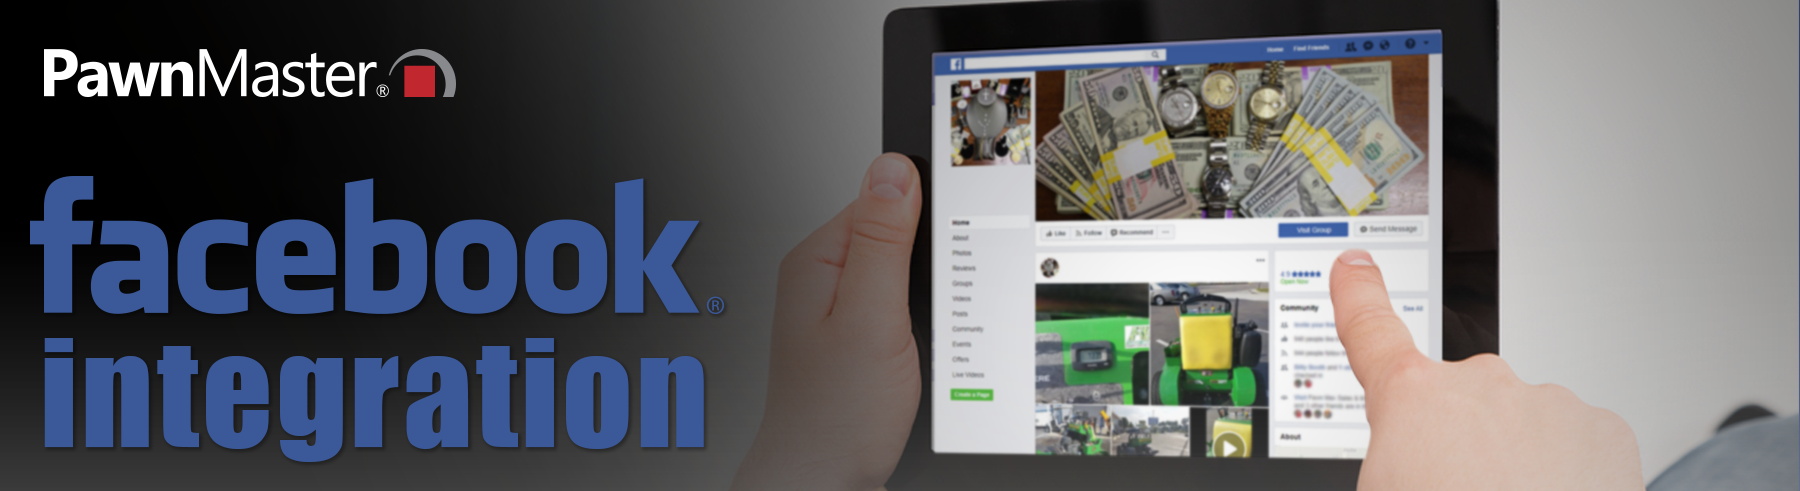 header-FacebookIntegration